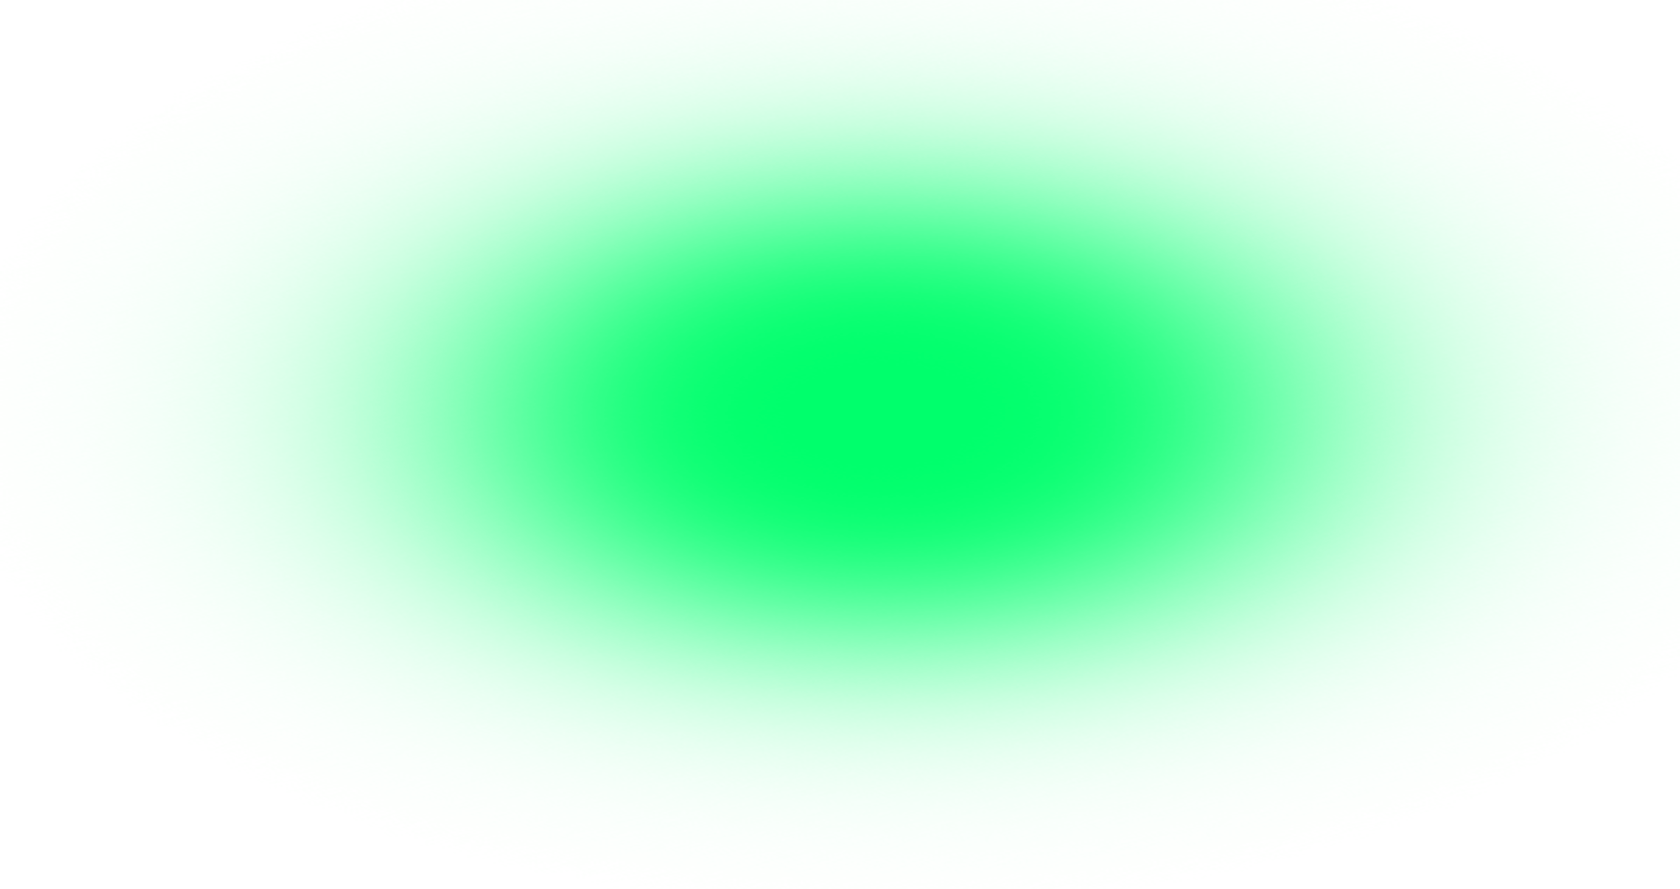 Пятно света. Зеленое свечение на прозрачном фоне. Цветные блики на прозрачном фоне. Зеленый блик без фона. Зелёный кружок на прозрачном фоне.